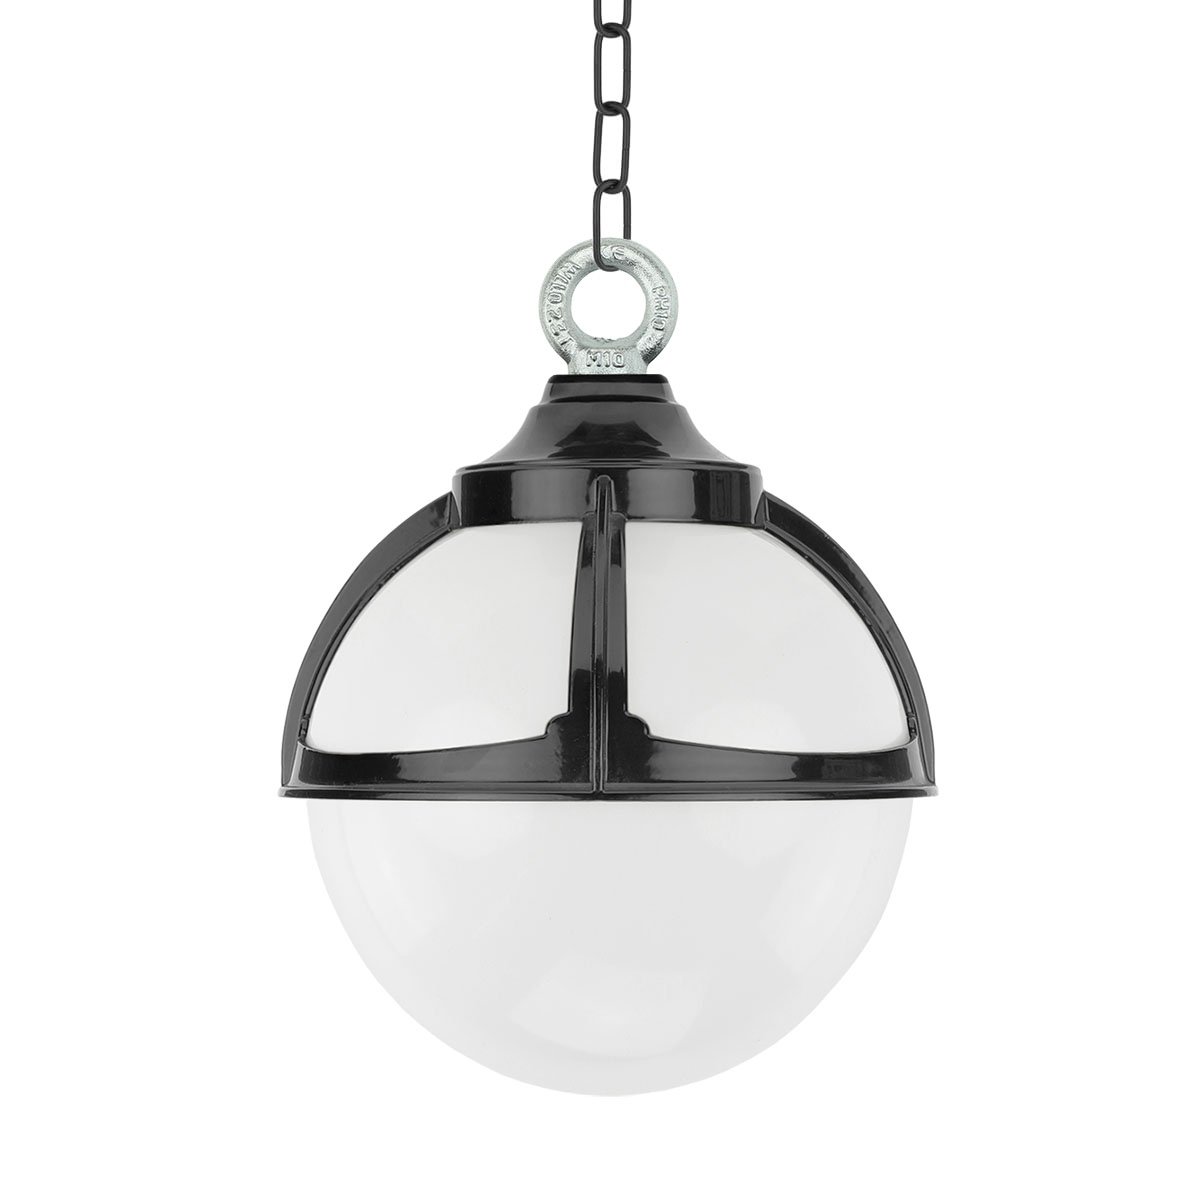 Lampe suspendue boule Achlum chaîne - Ø 25 cm